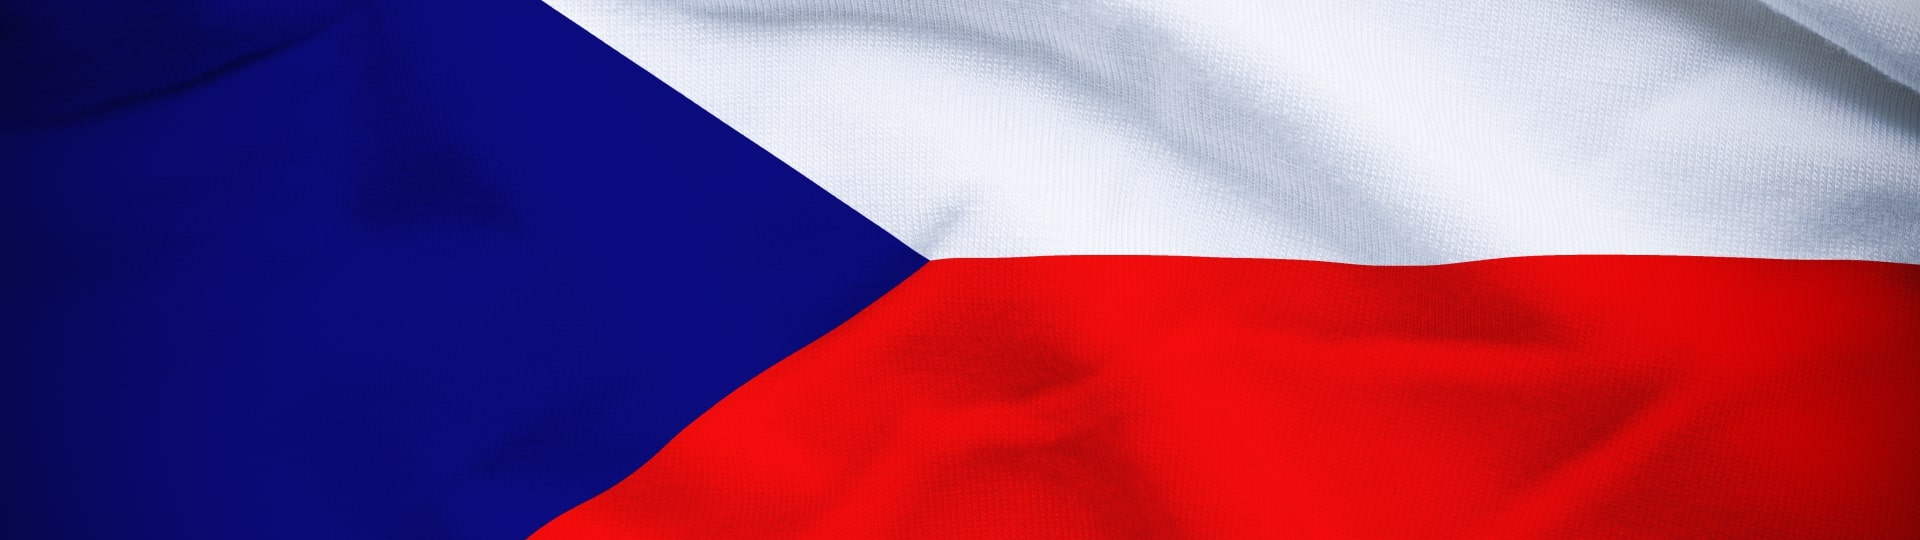 Důvěra podnikatelů v českou ekonomiku klesla